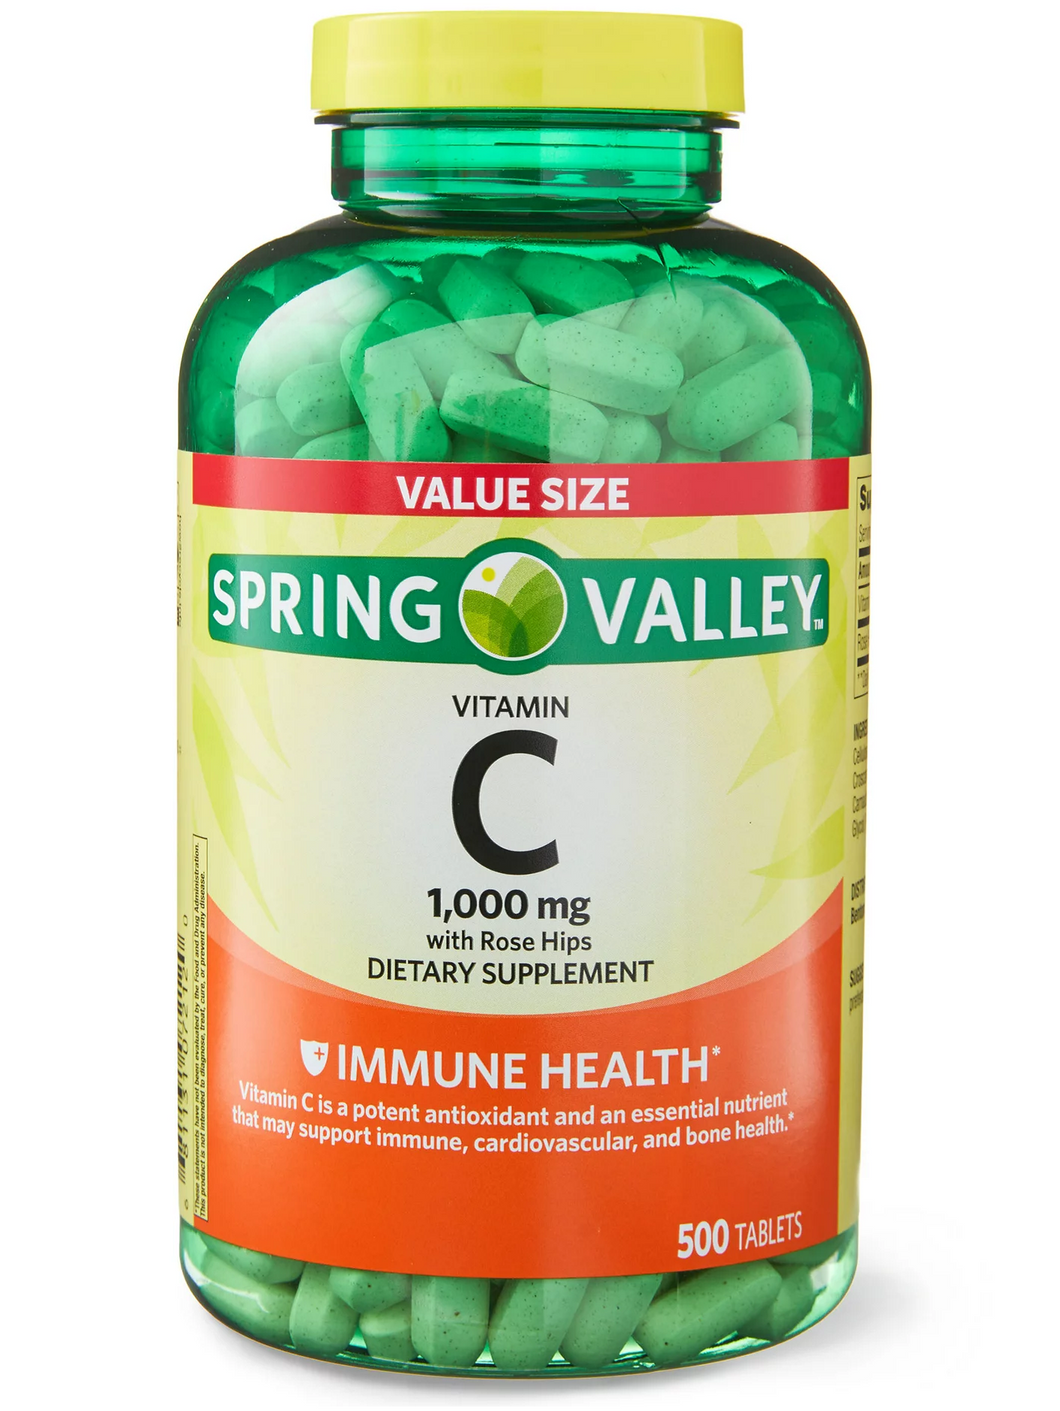 Vitamina C de 1000 mg, varios tamaños disponibles (100 y 500 tabletas)